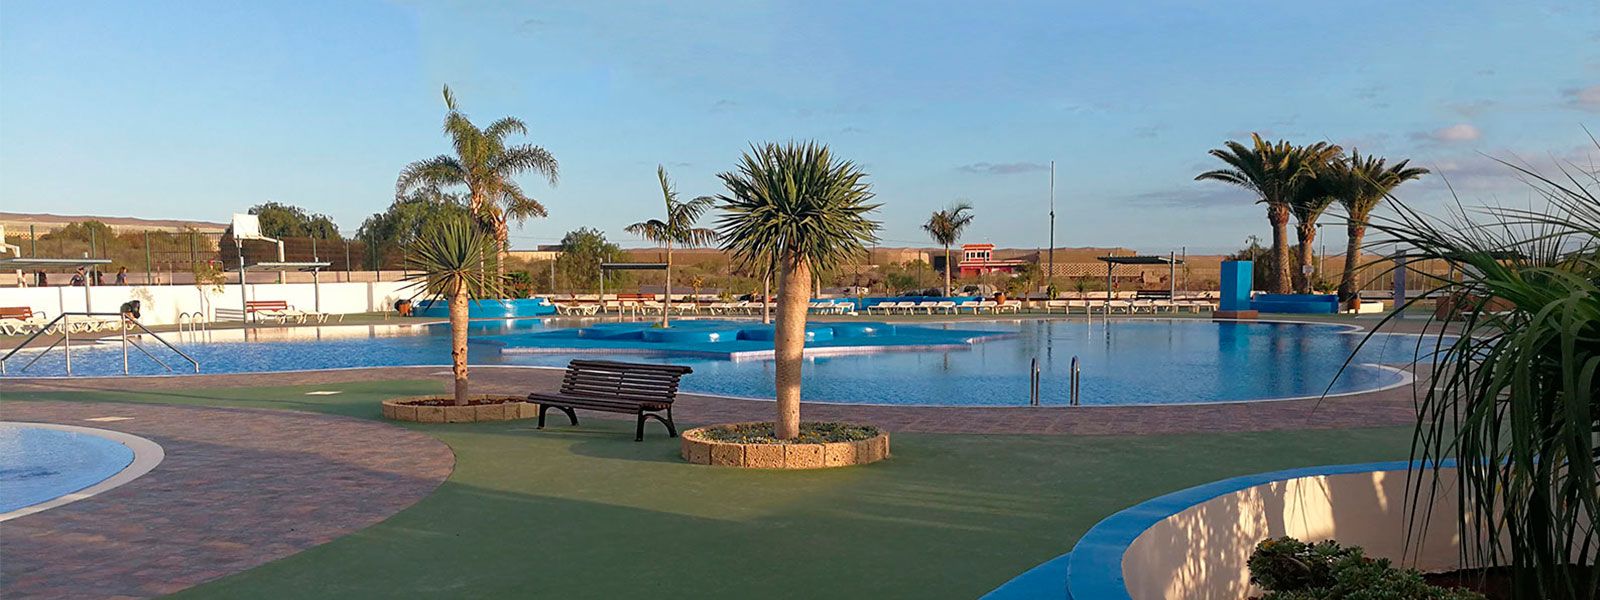 Camping Nauta piscinas con palmeras